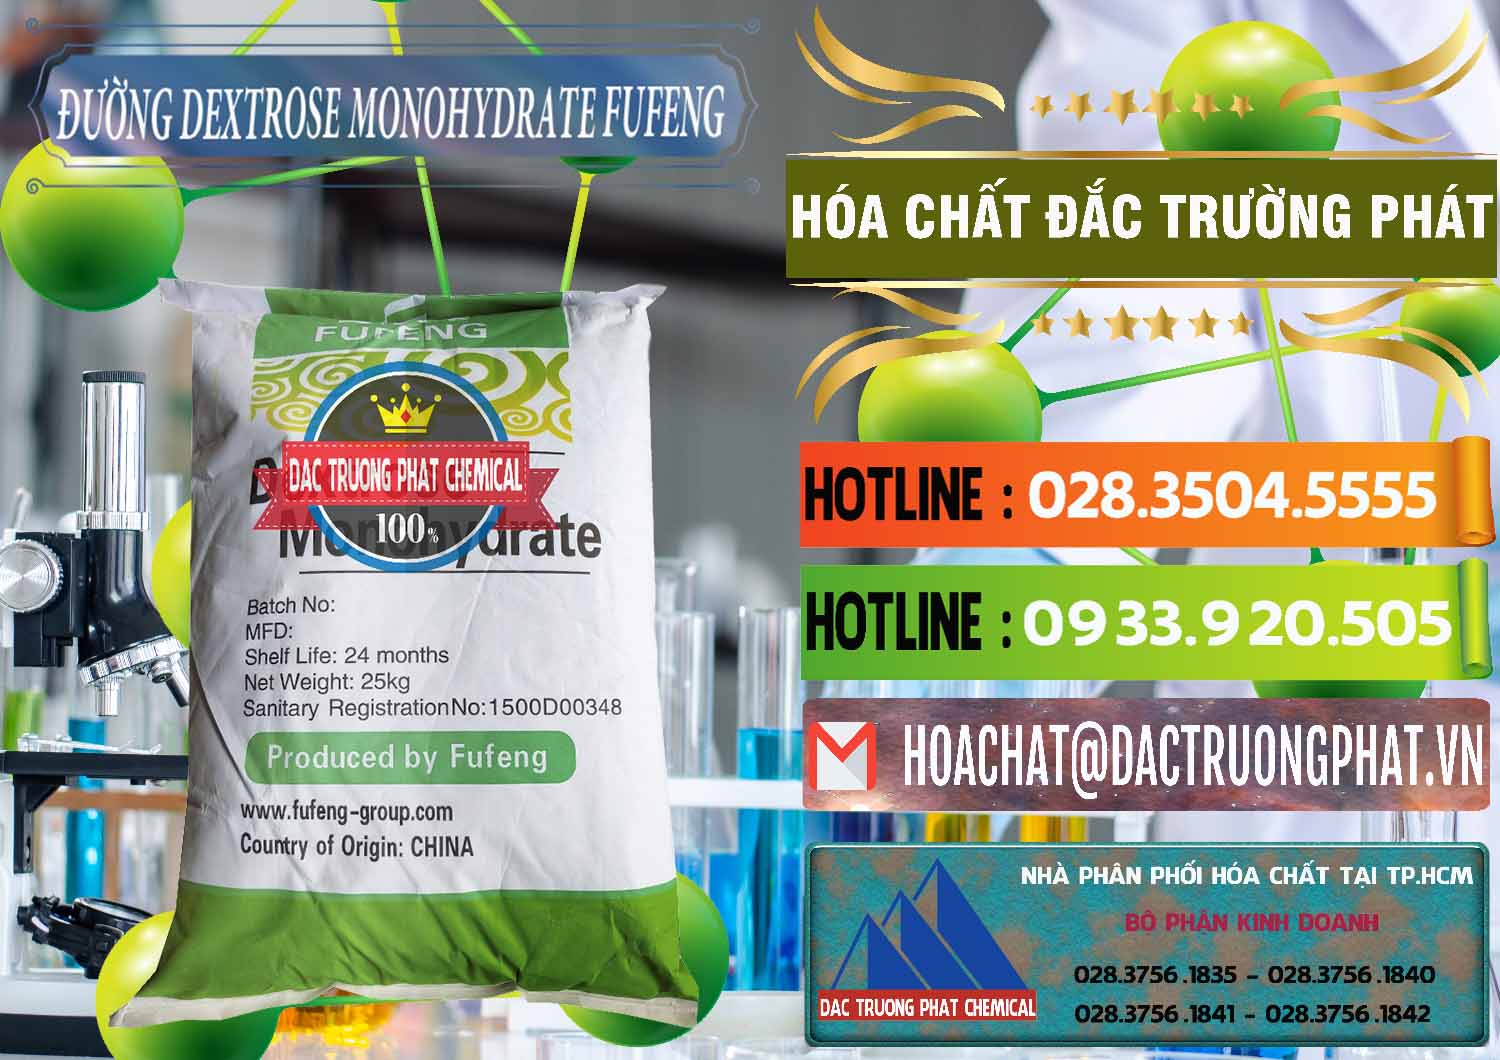 Chuyên bán và cung cấp Đường Dextrose Monohydrate Food Grade Fufeng Trung Quốc China - 0223 - Nhà cung cấp và bán hóa chất tại TP.HCM - cungcaphoachat.com.vn